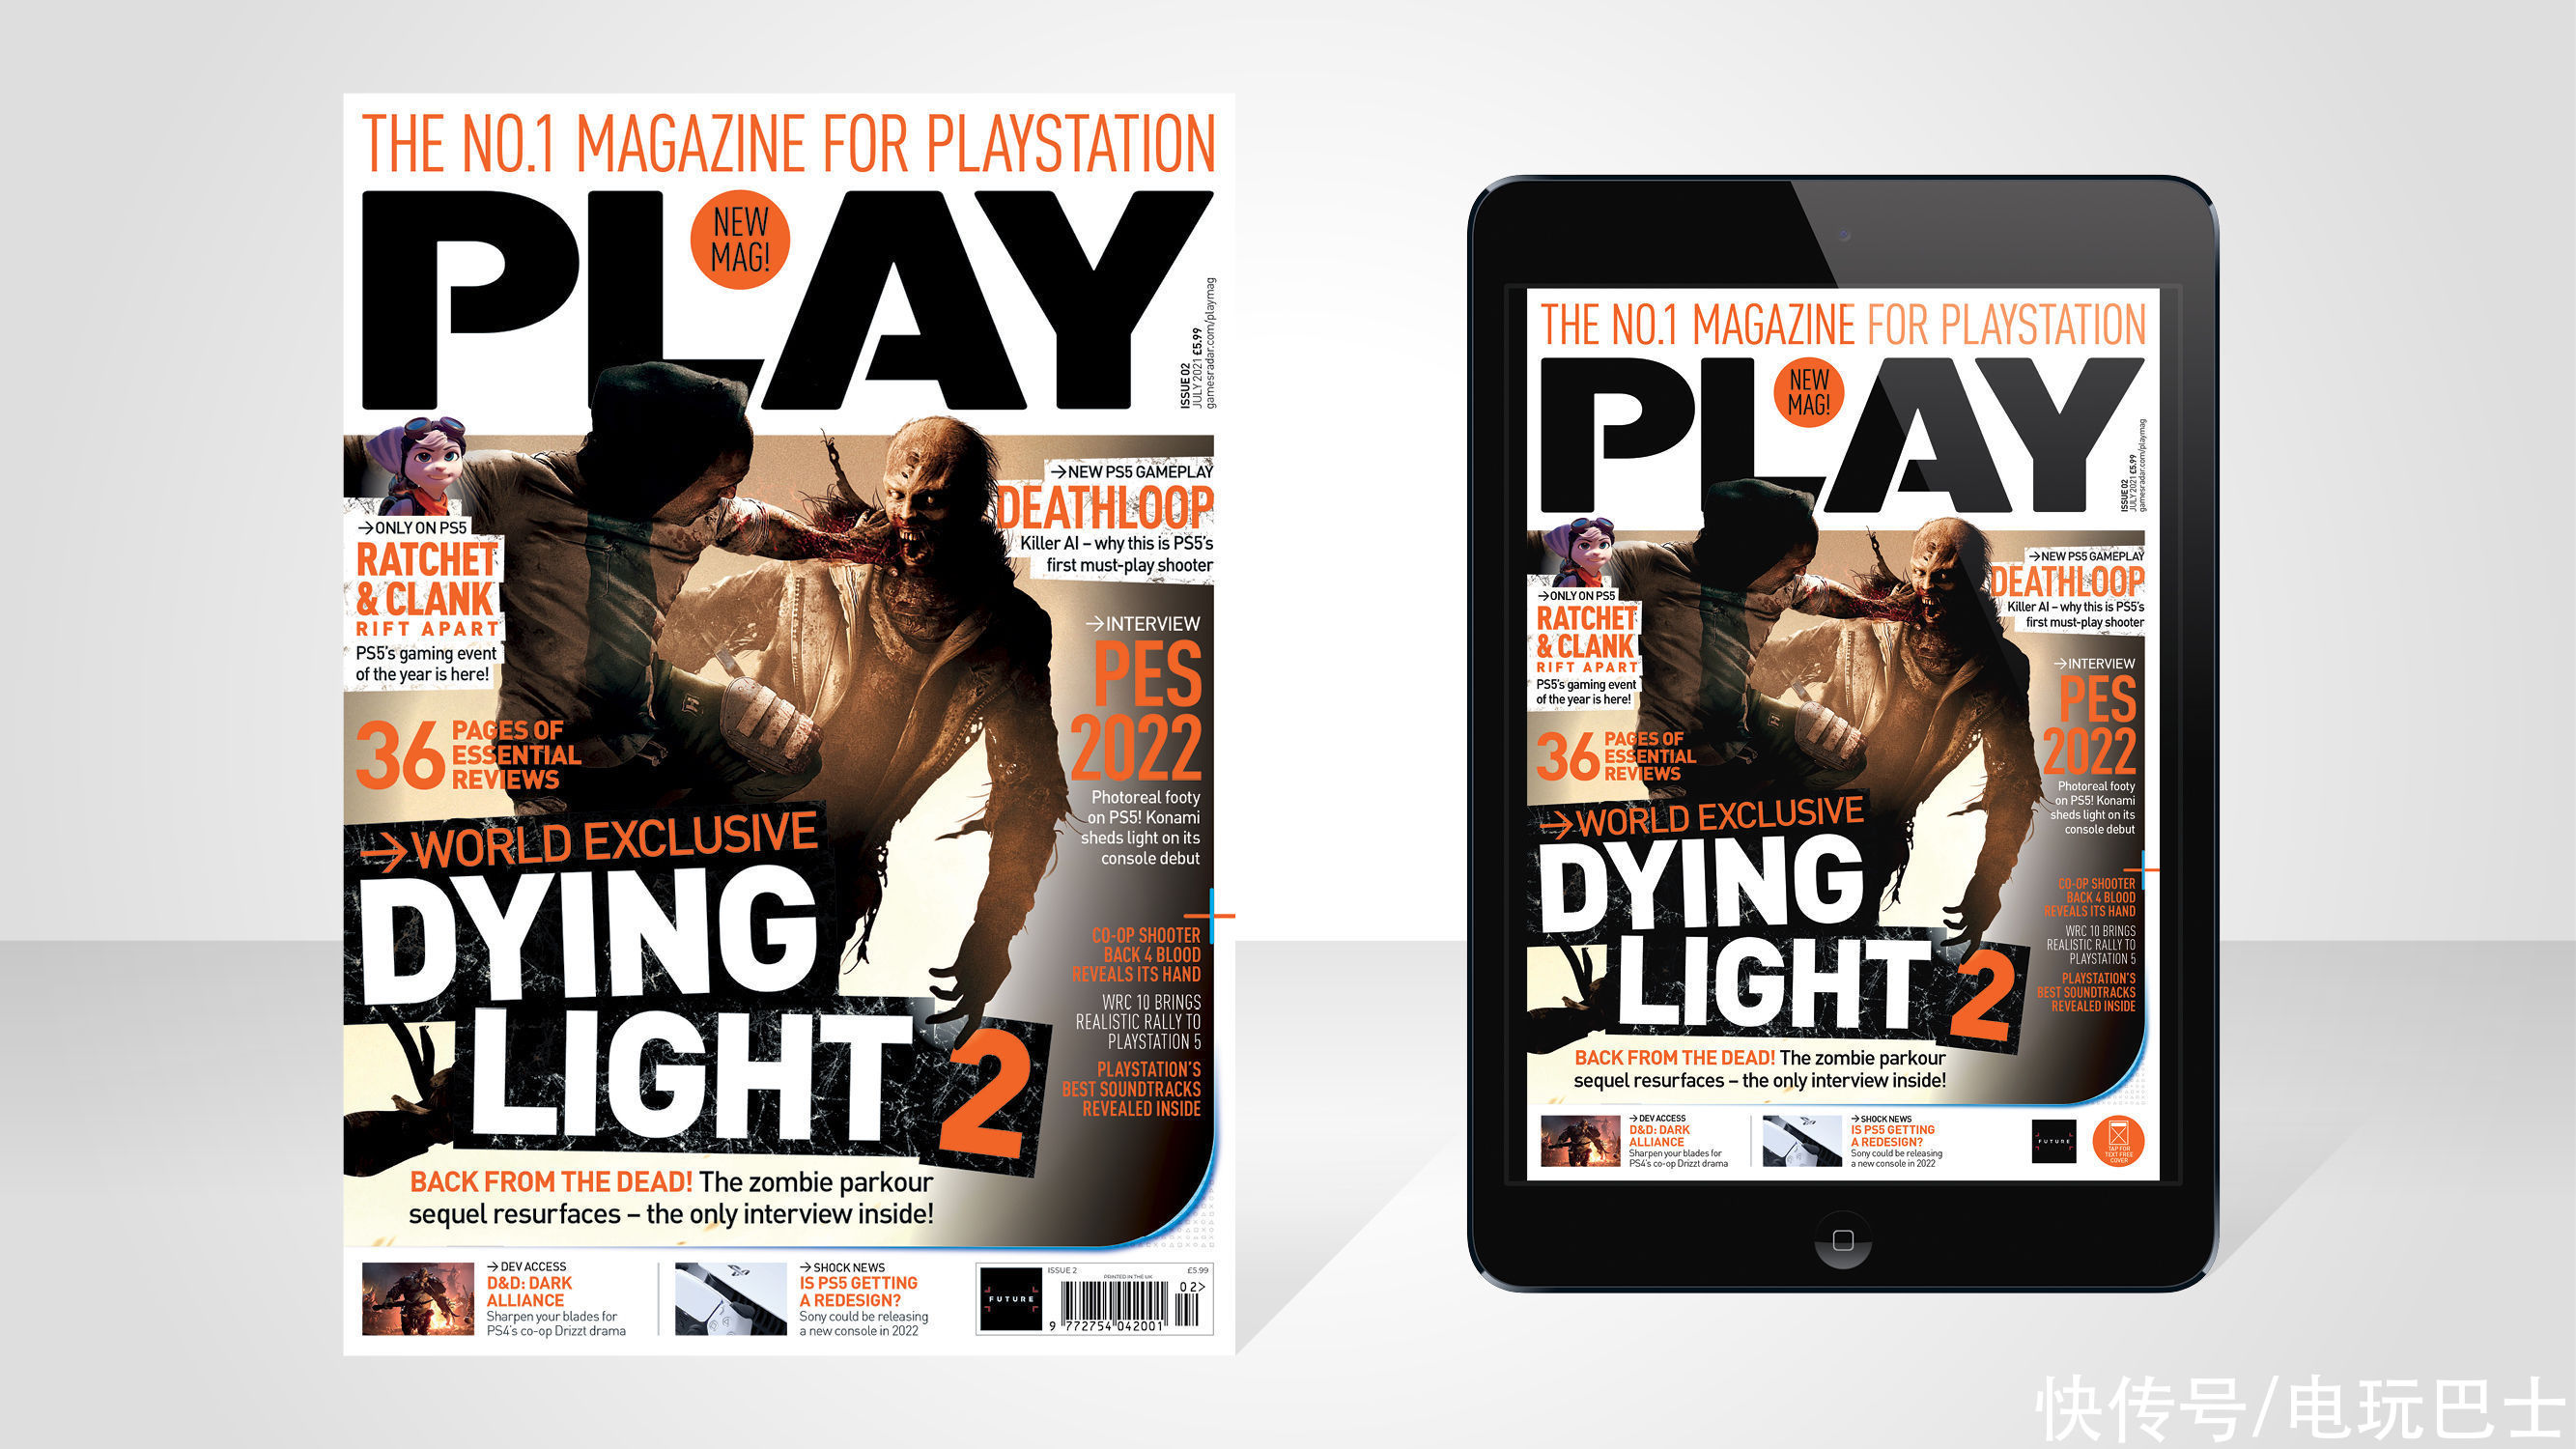 techland|《消逝的光芒2》将充分发挥PS5机能 增强游戏体验